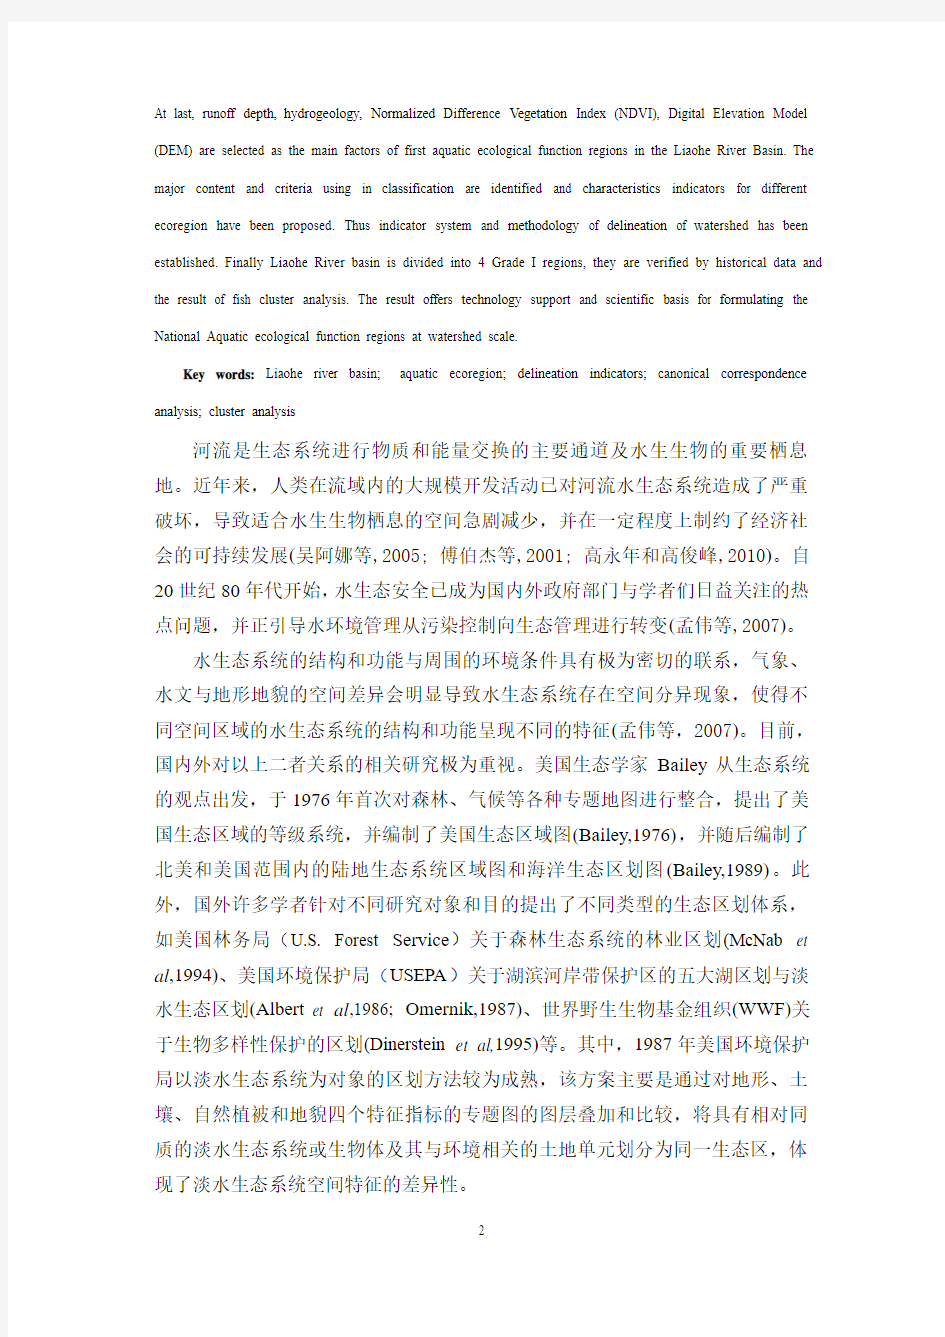 辽河流域一级分区研究(2011-2-20)